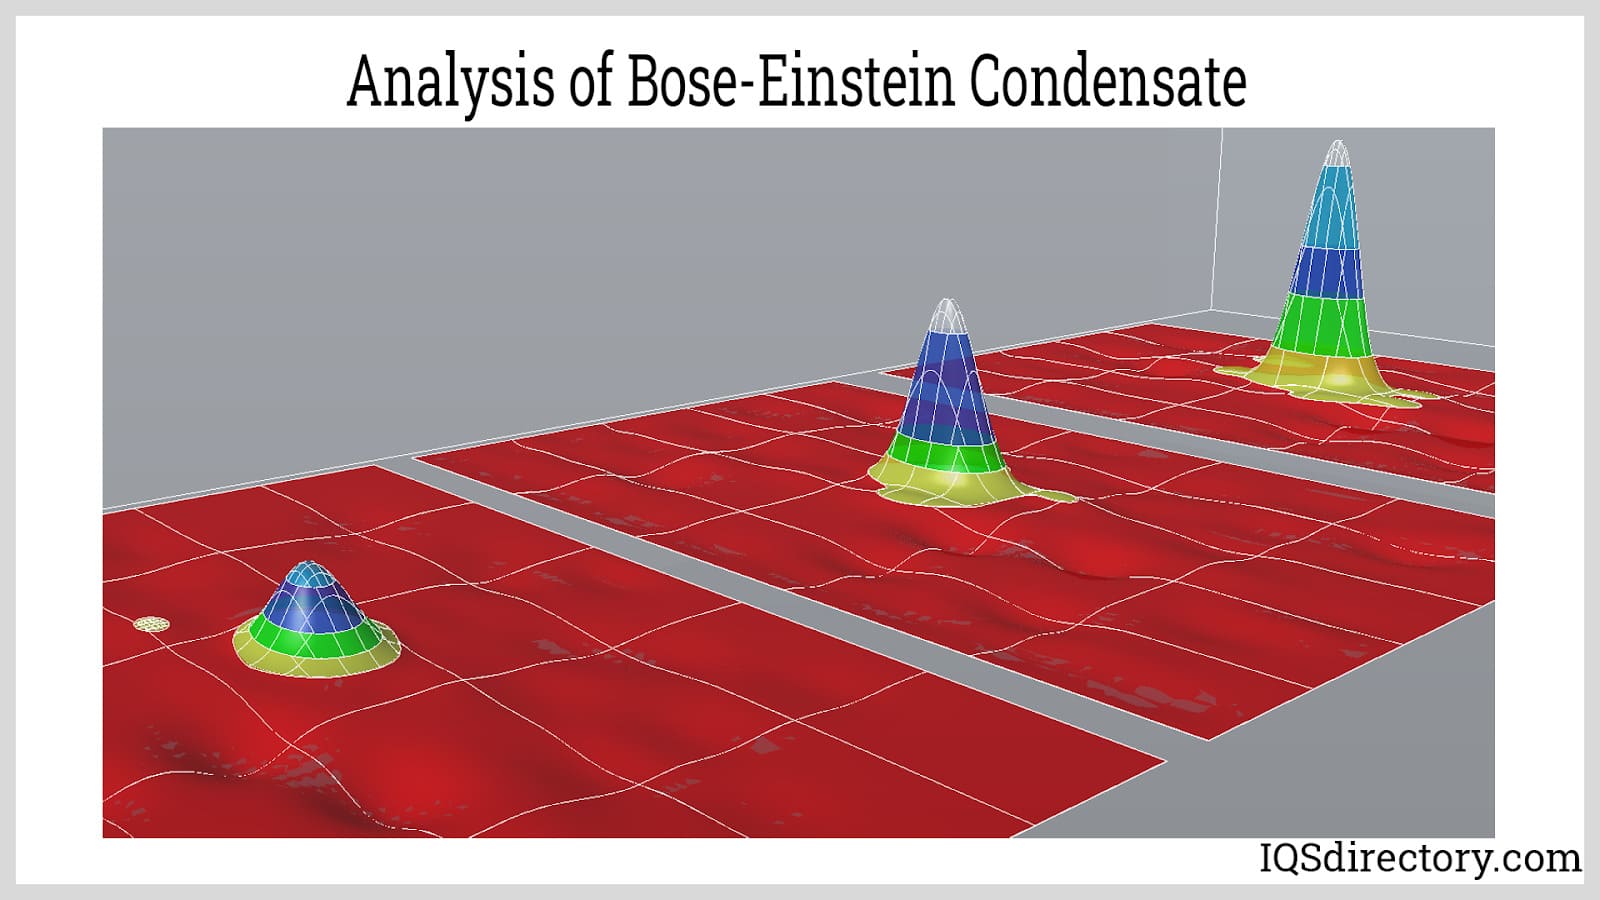 Analysis of Bose-Einstein Condensate